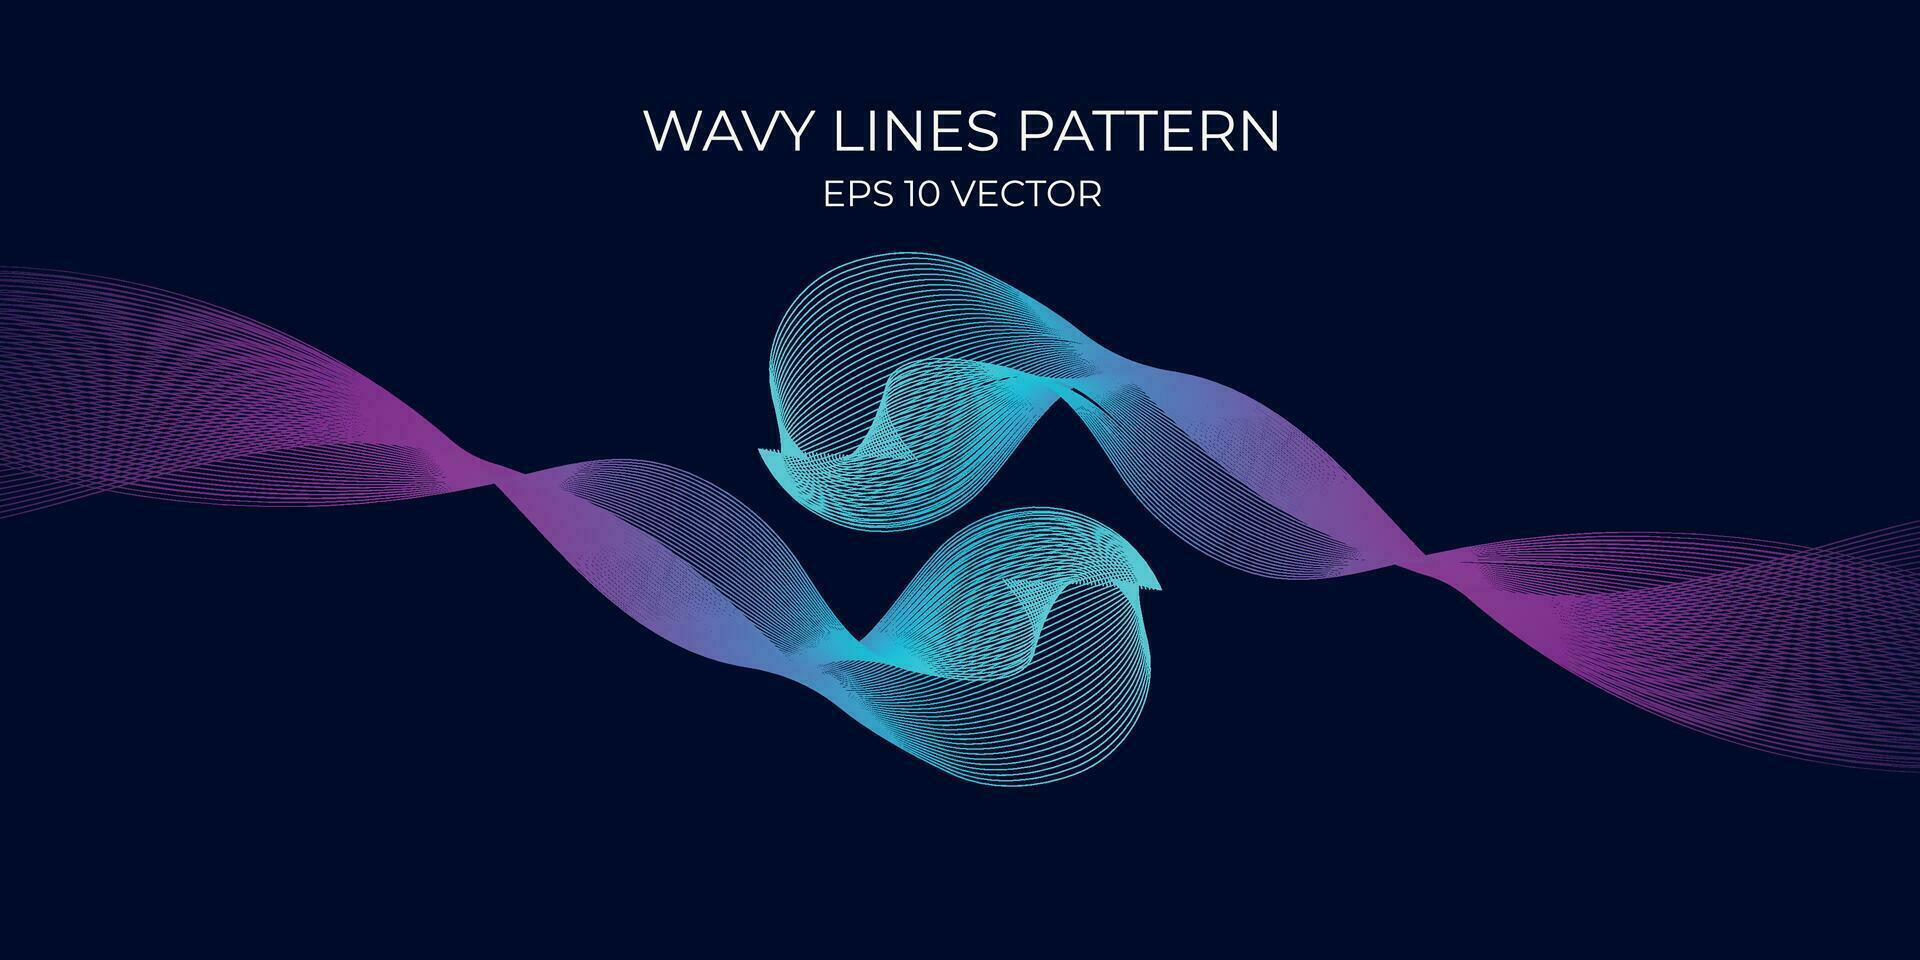 Vektor wellig Linien Muster glatt Kurve fließend dynamisch Blau Grün Gradient Licht isoliert auf Marine Hintergrund. Konzept zum Technologie, Digital, Kommunikation, Wissenschaft, Musik.